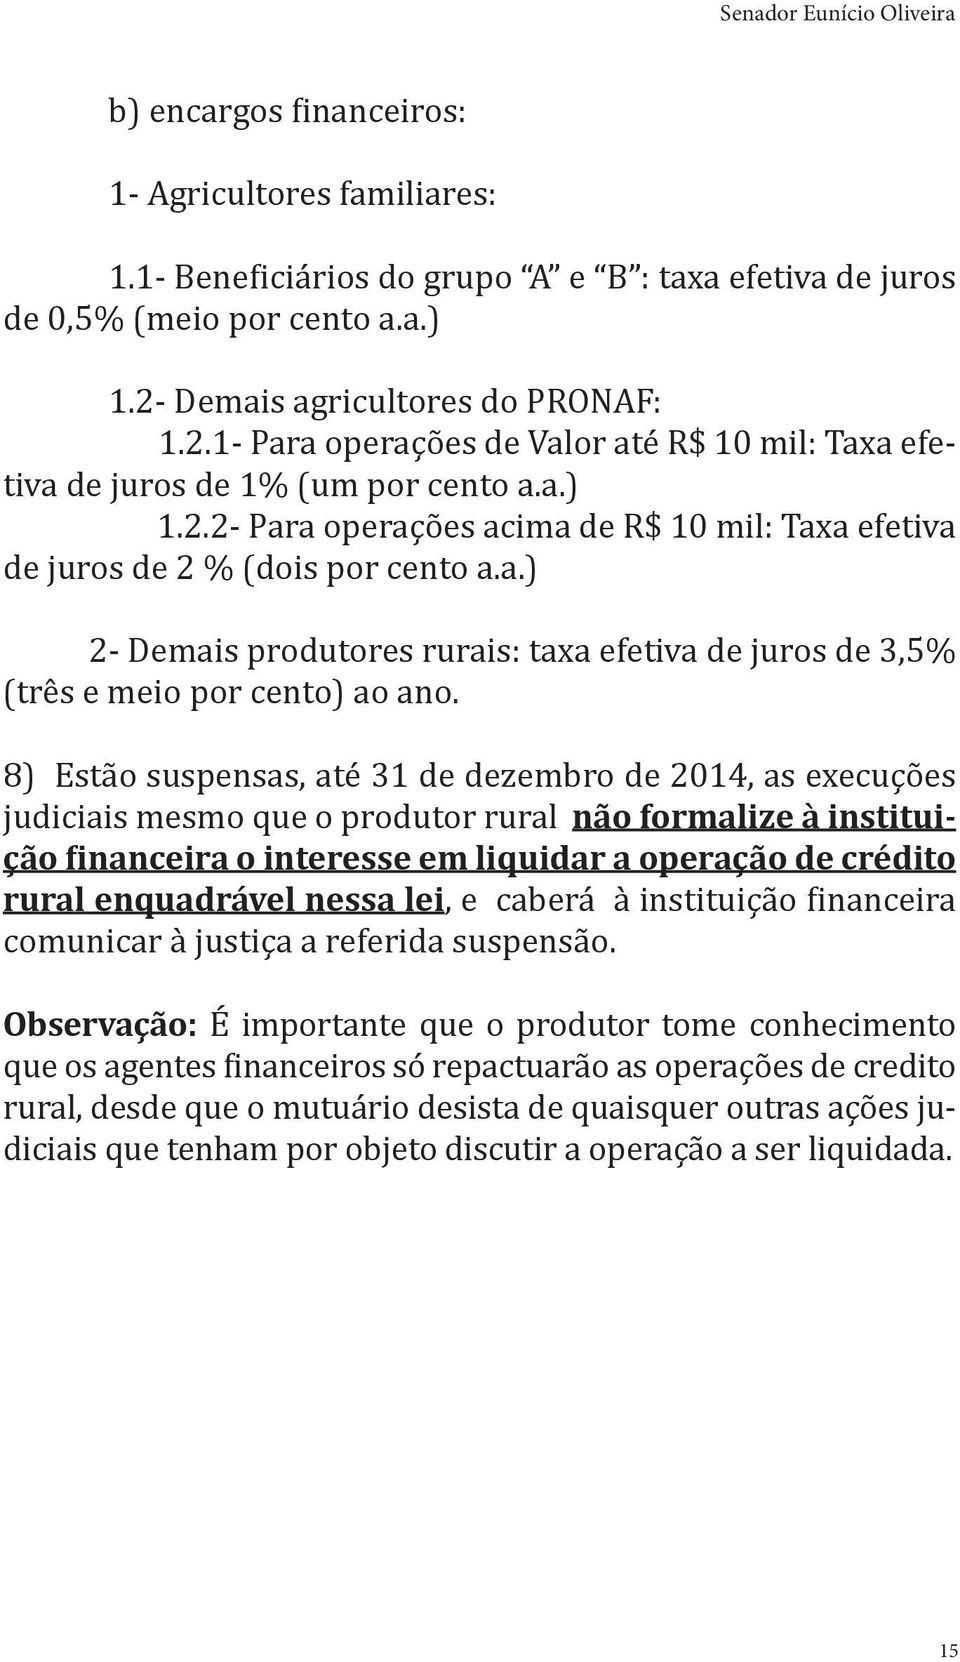 a.) 2- Demais produtores rurais: taxa efetiva de juros de 3,5% (três e meio por cento) ao ano.